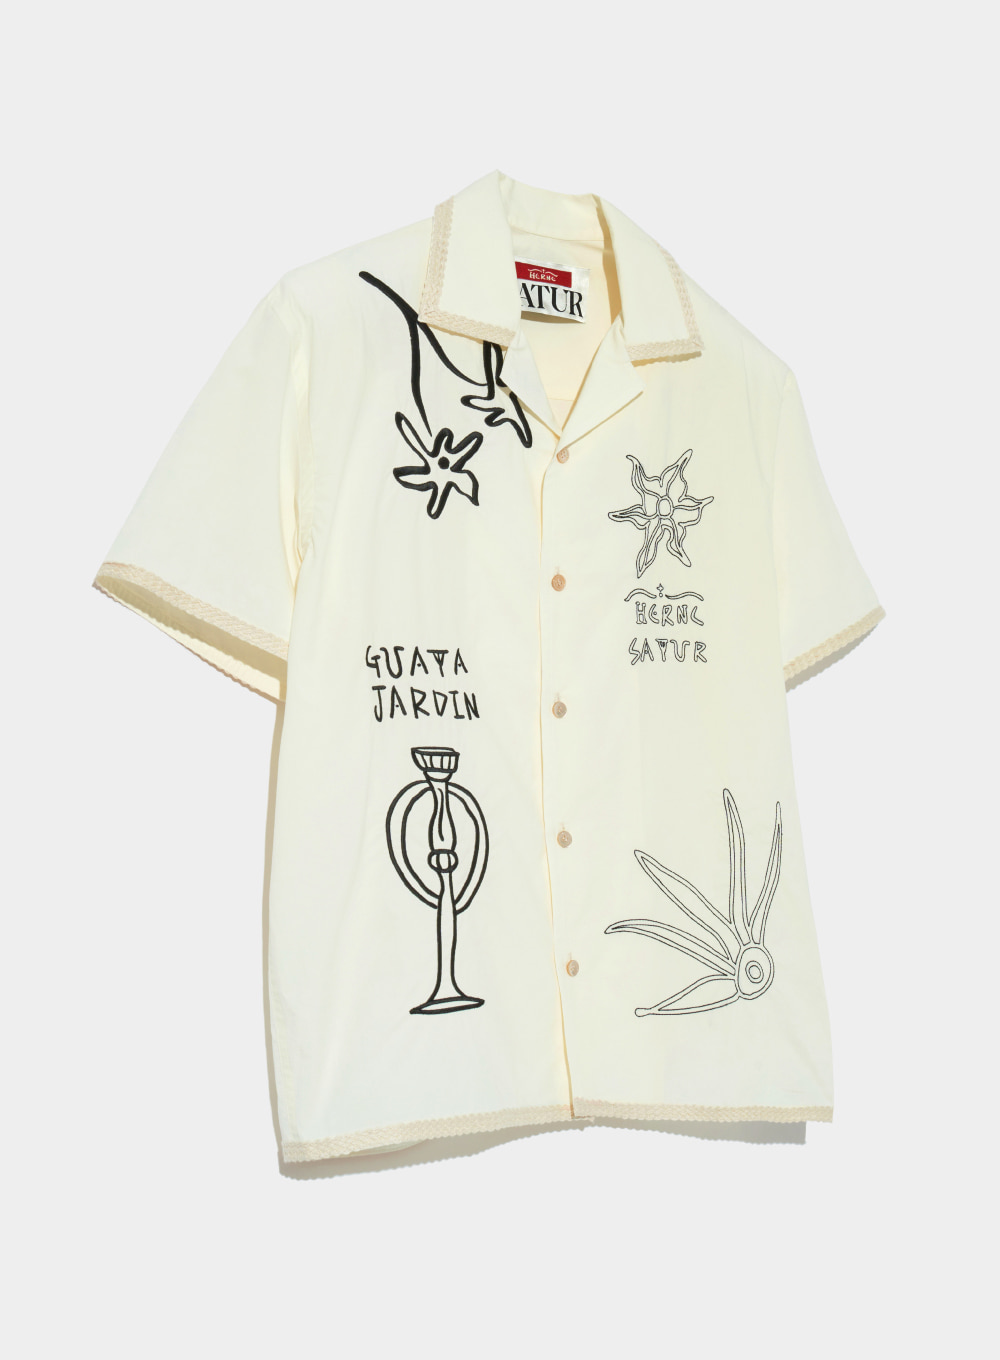 [6월 7일 예약배송] [세터X헤르시] 구아타 자르댕 : 태양의 사물 하프 셔츠 리조트 크림